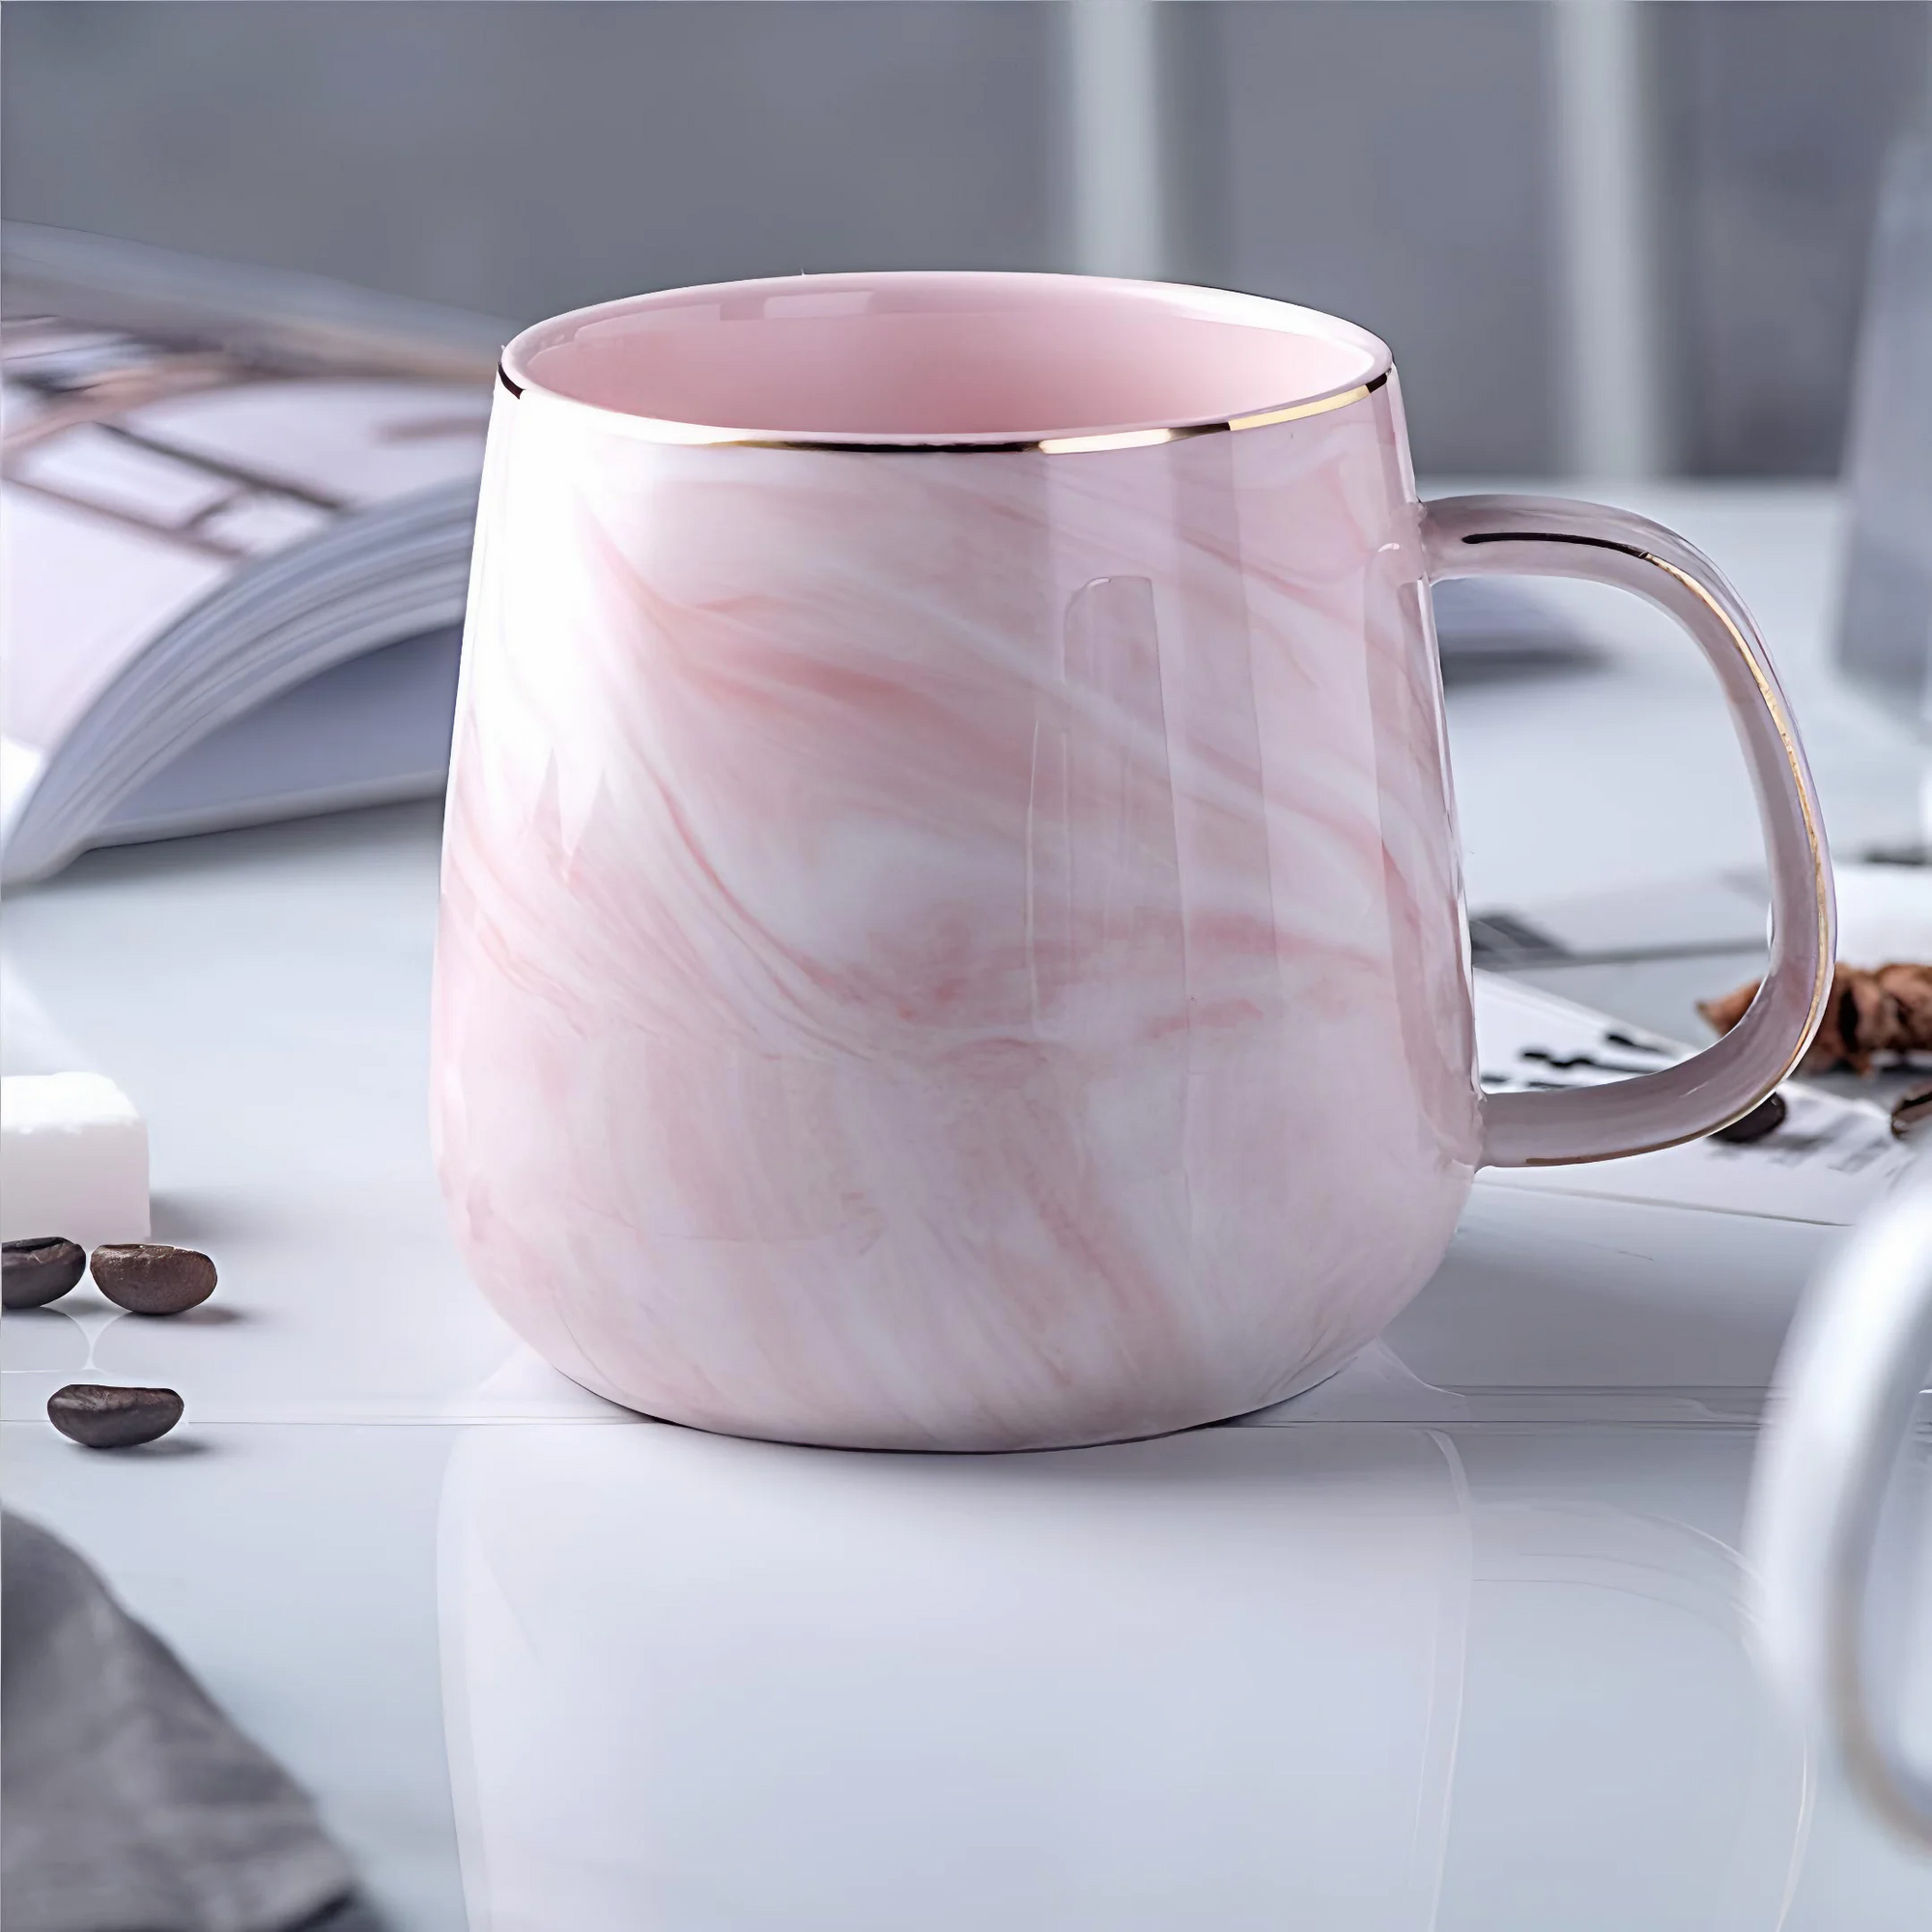 CasaVero's Elegant Marble Look Ceramic Mug